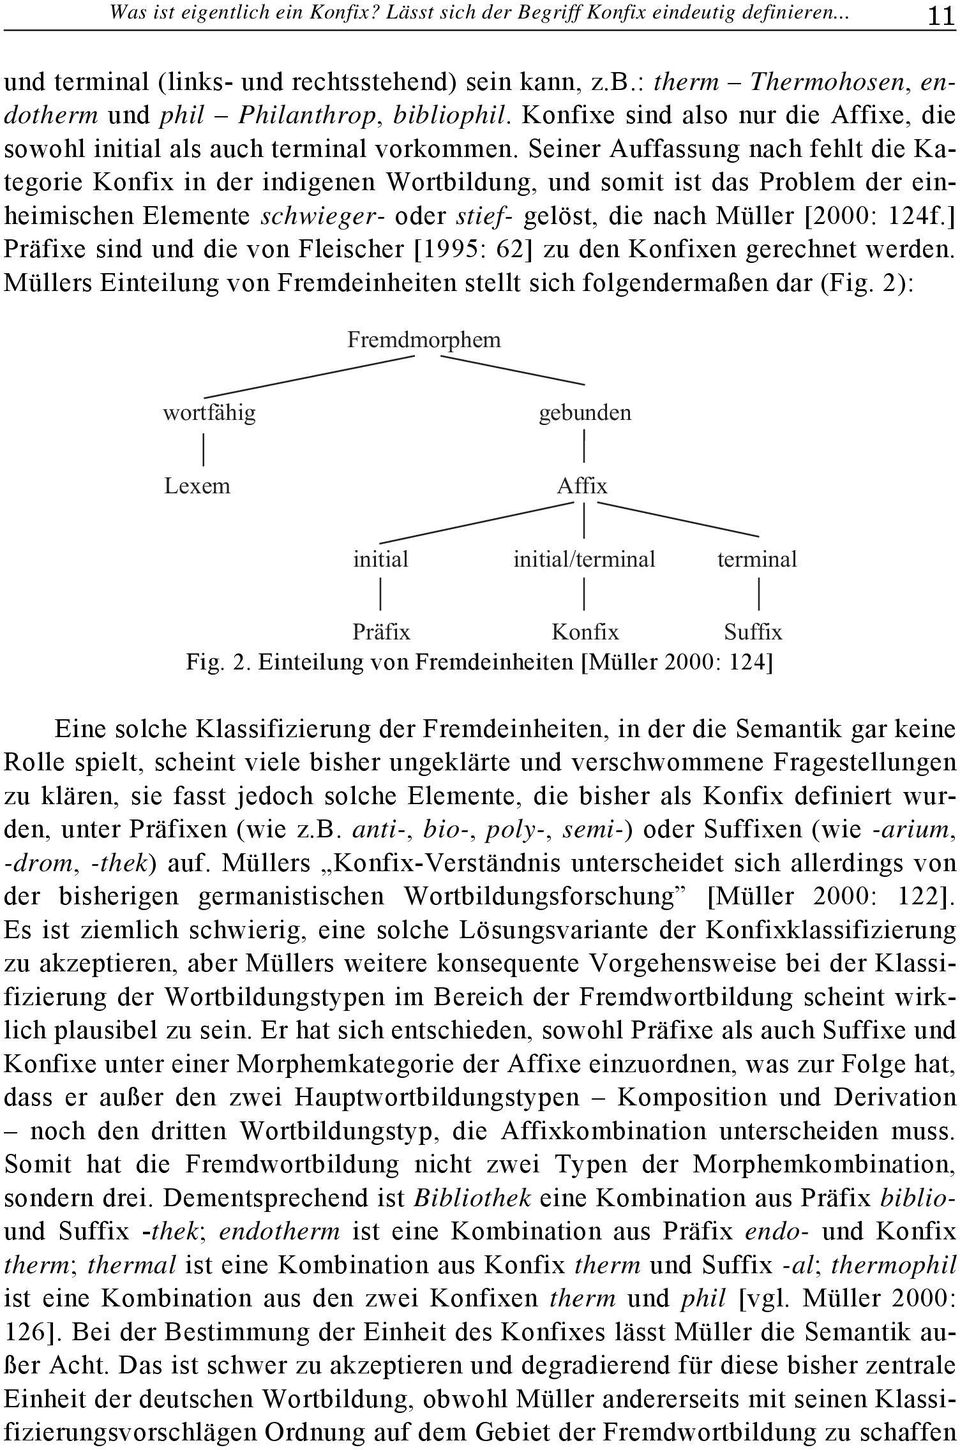 Seiner Auffassung nach fehlt die Kategorie Konfix in der indigenen Wortbildung, und somit ist das Problem der einheimischen Elemente schwieger- oder stief- gelöst, die nach Müller [2000: 124f.